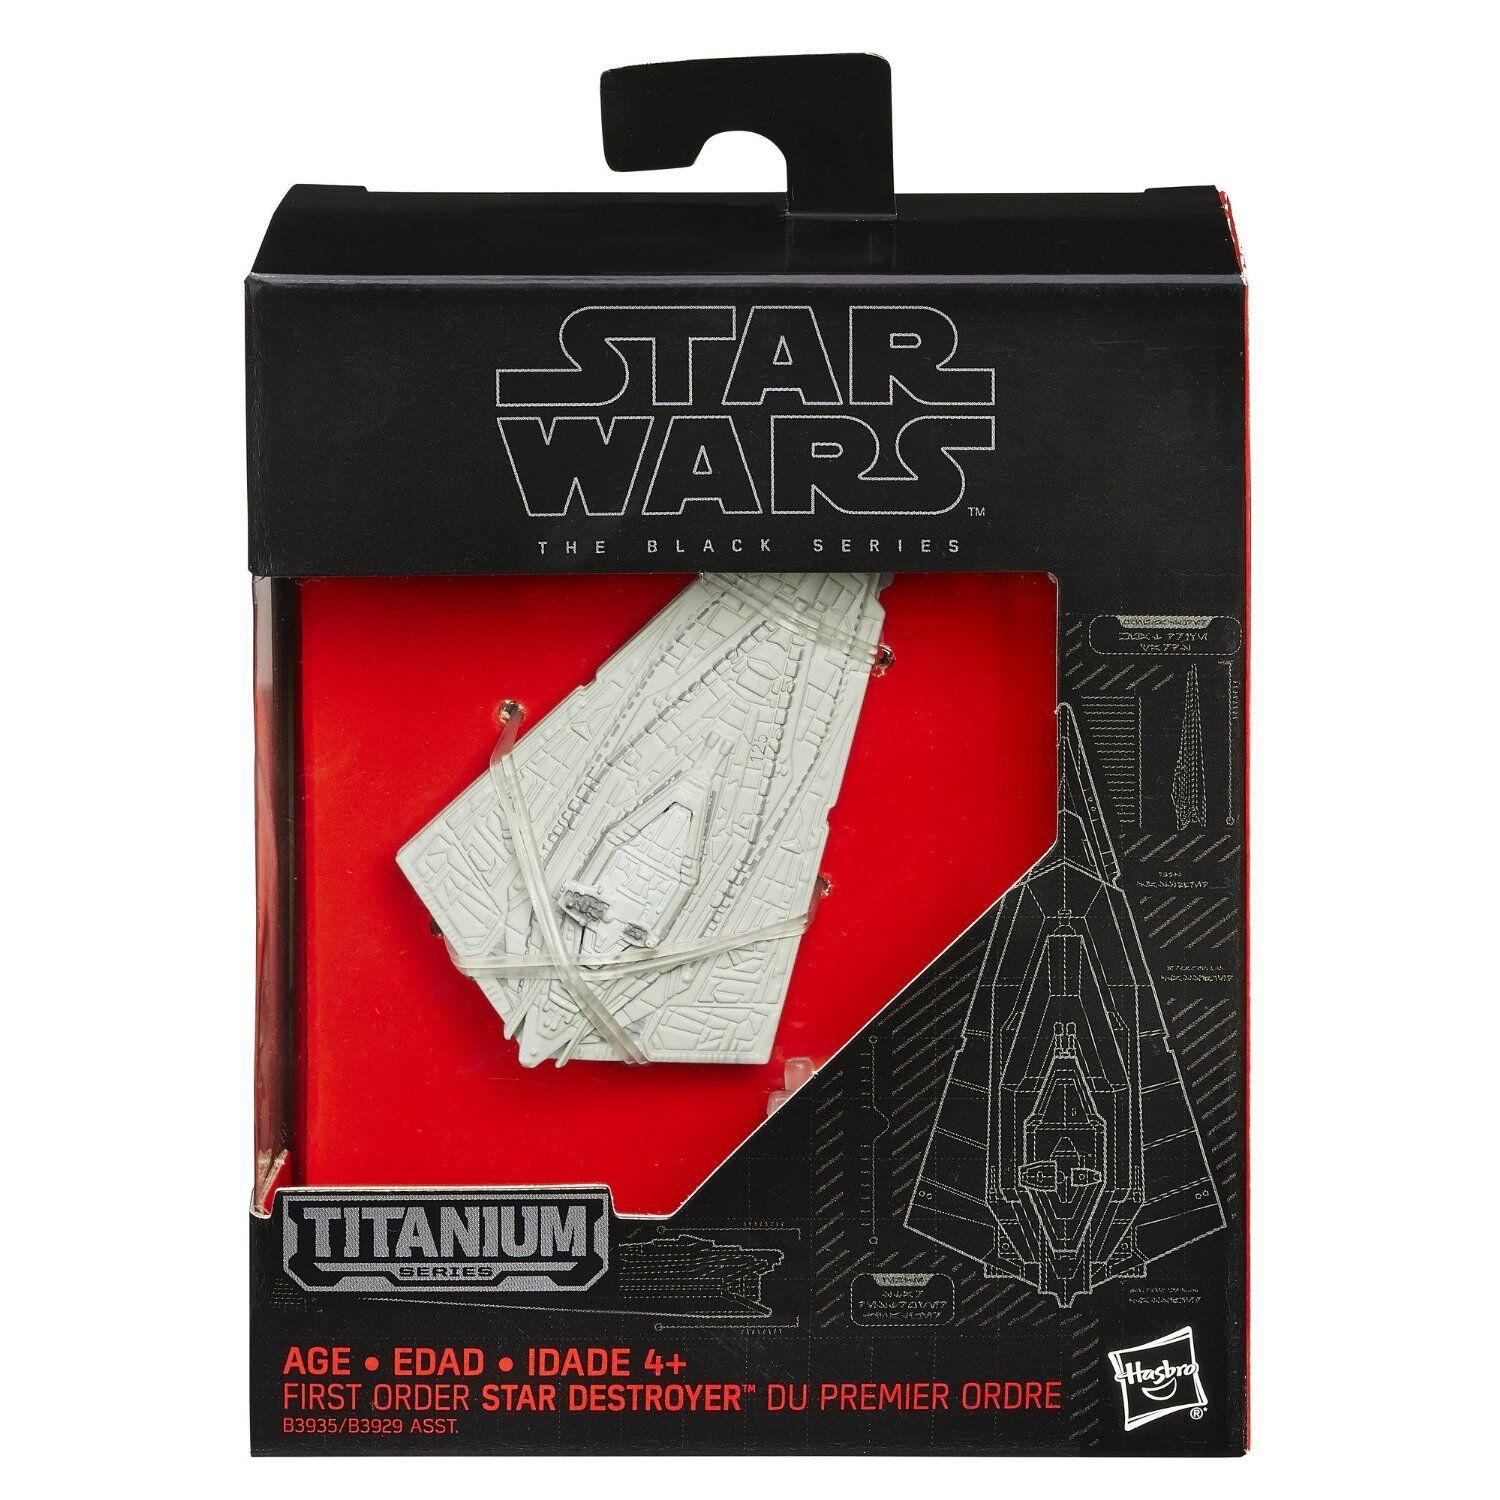 Star Wars The Black Series : First Order Star Destroyer Titanium Figure